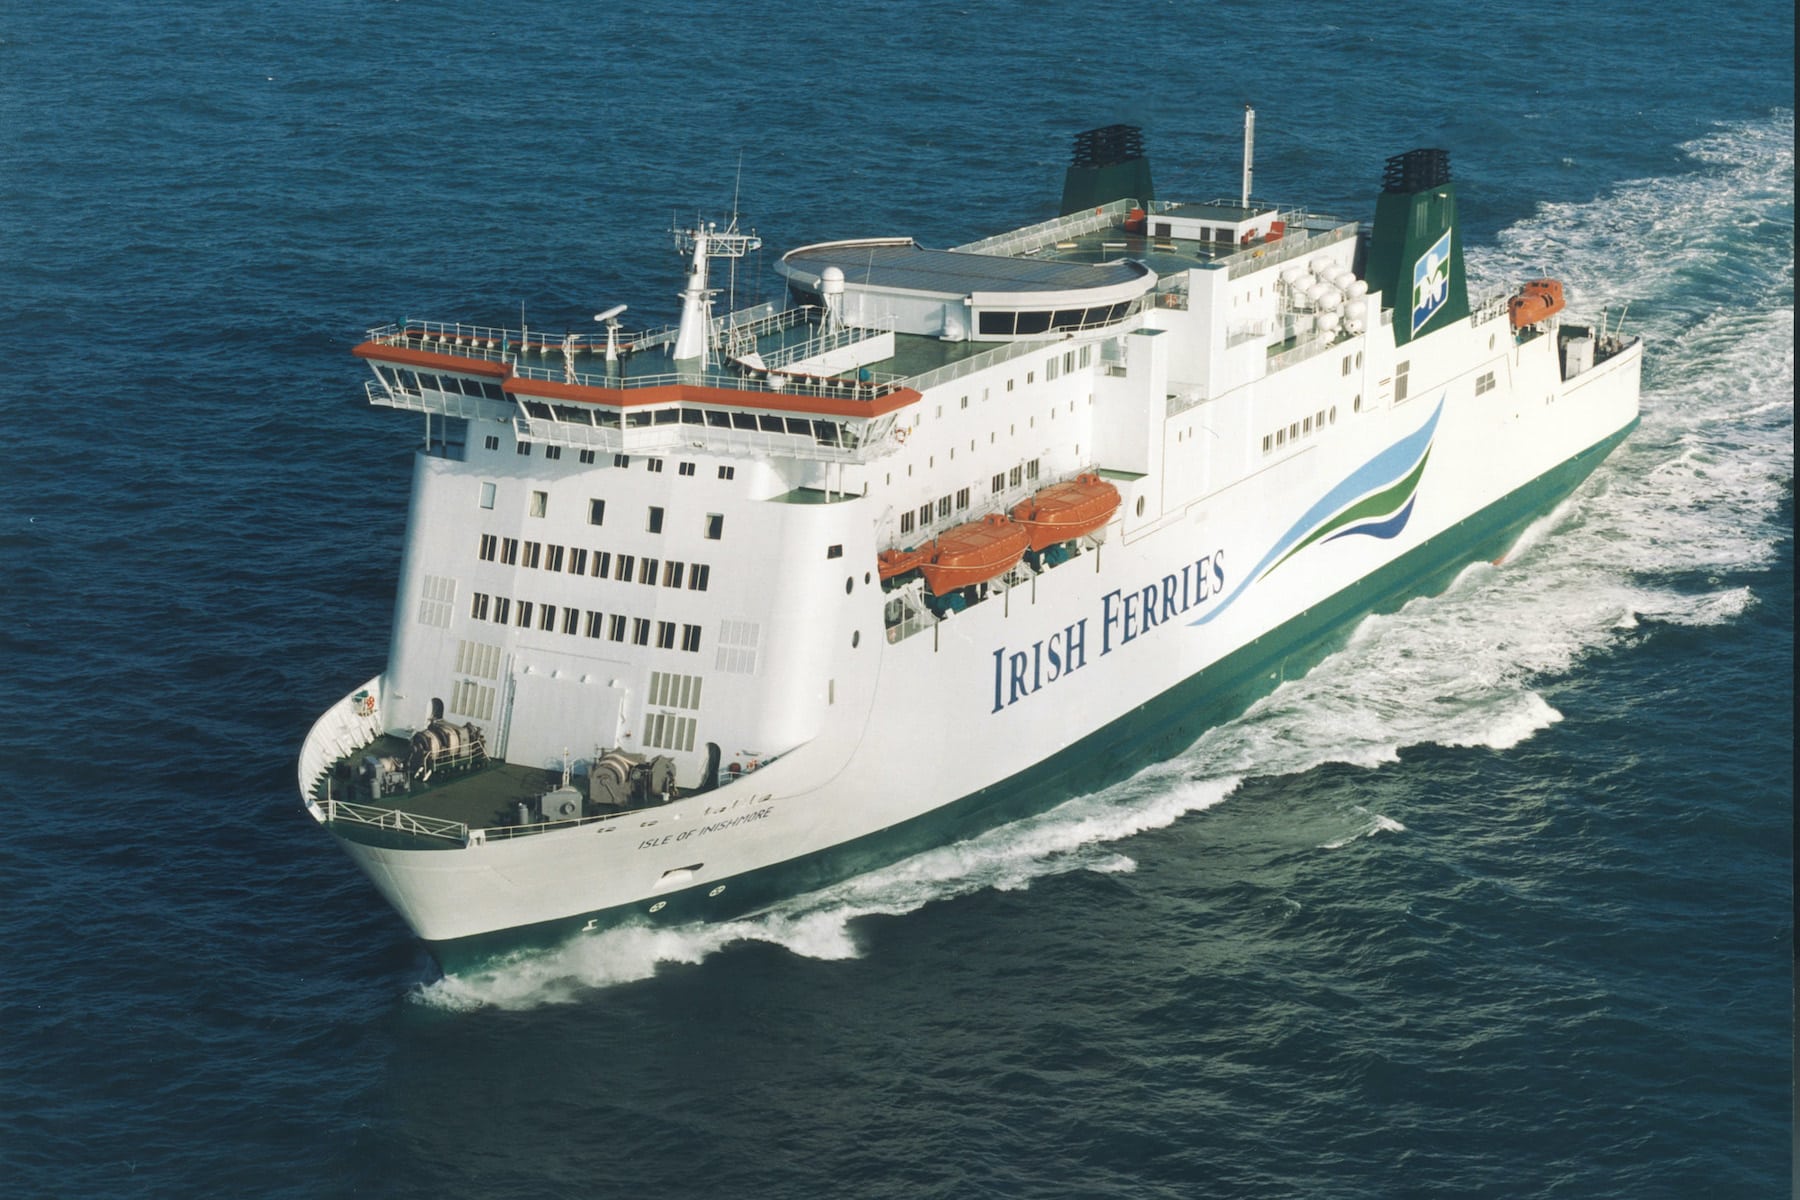 free travel pass on irish ferries